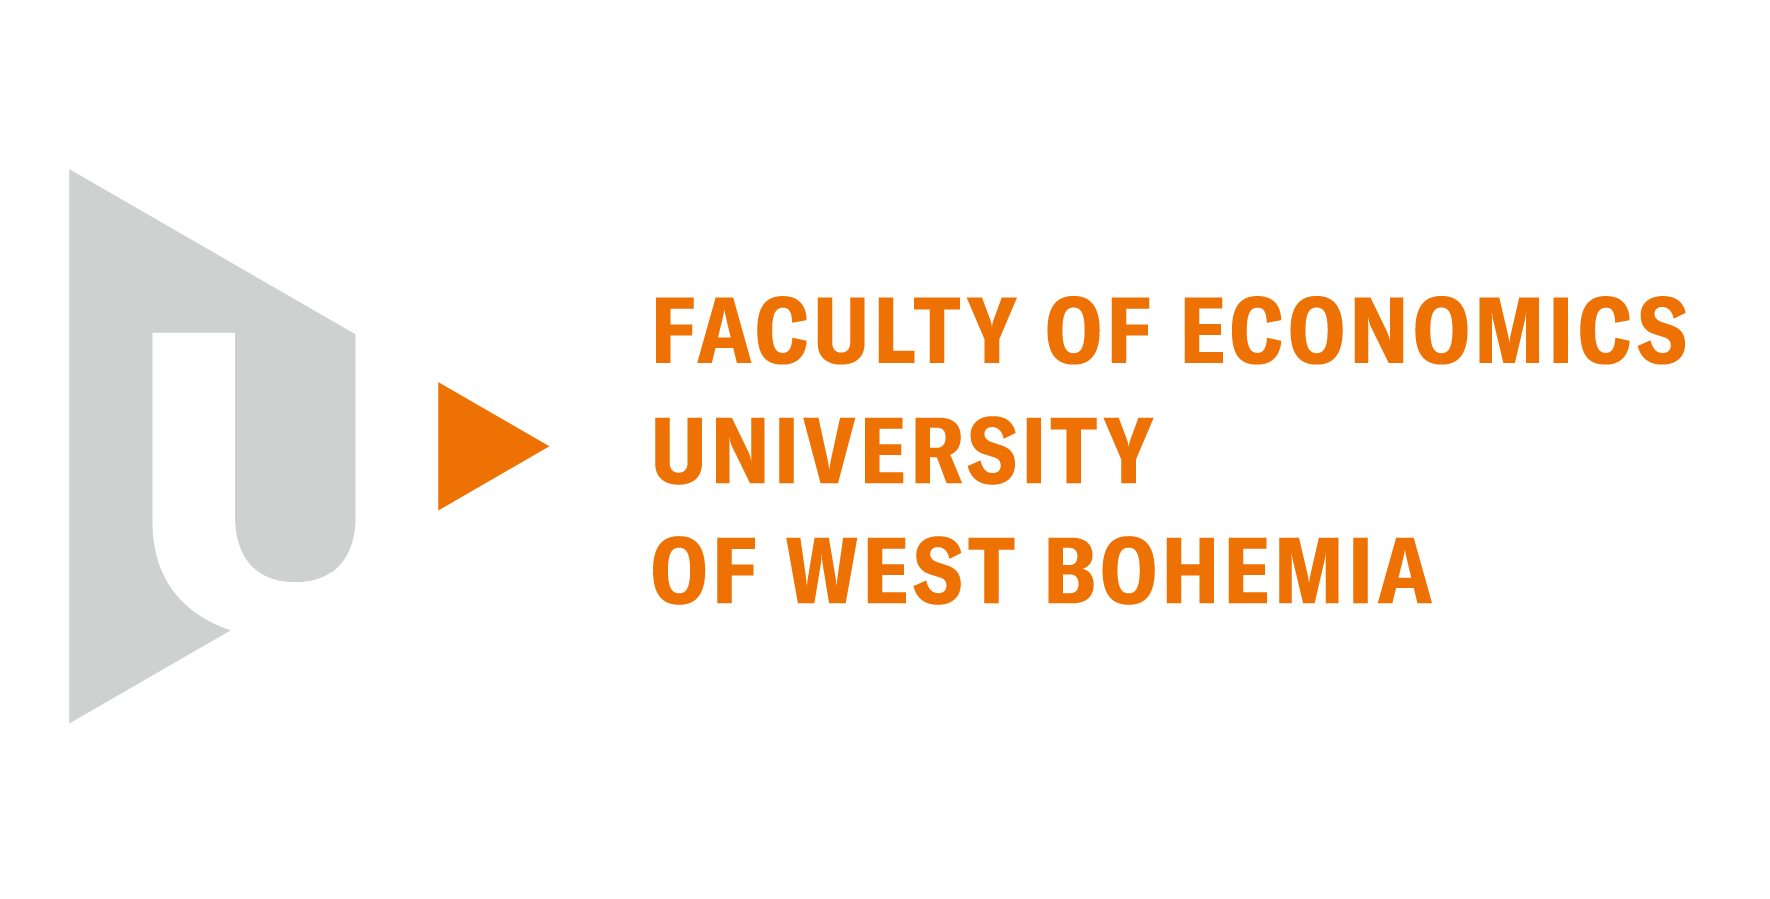 FACULTY OF ECONOMICS UNIVERSITY OF WEST BOHEMIA